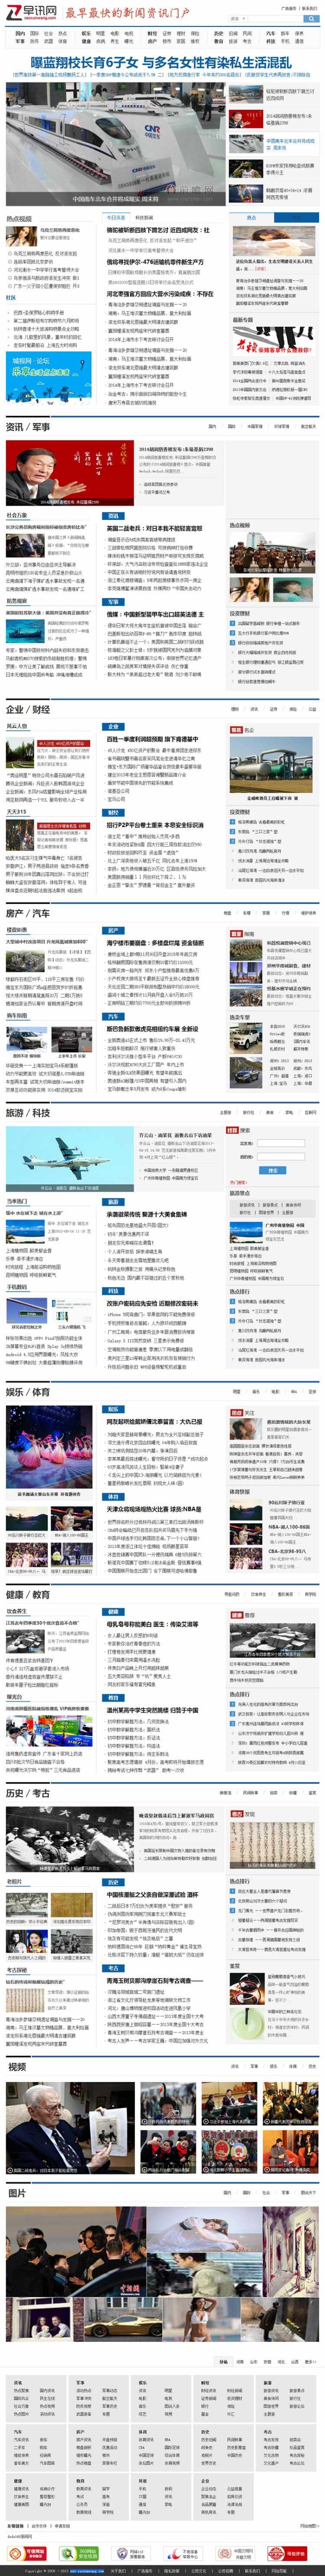 早讯网源码 带wap手机模板 新闻资讯网站模板 帝国cms7.2 